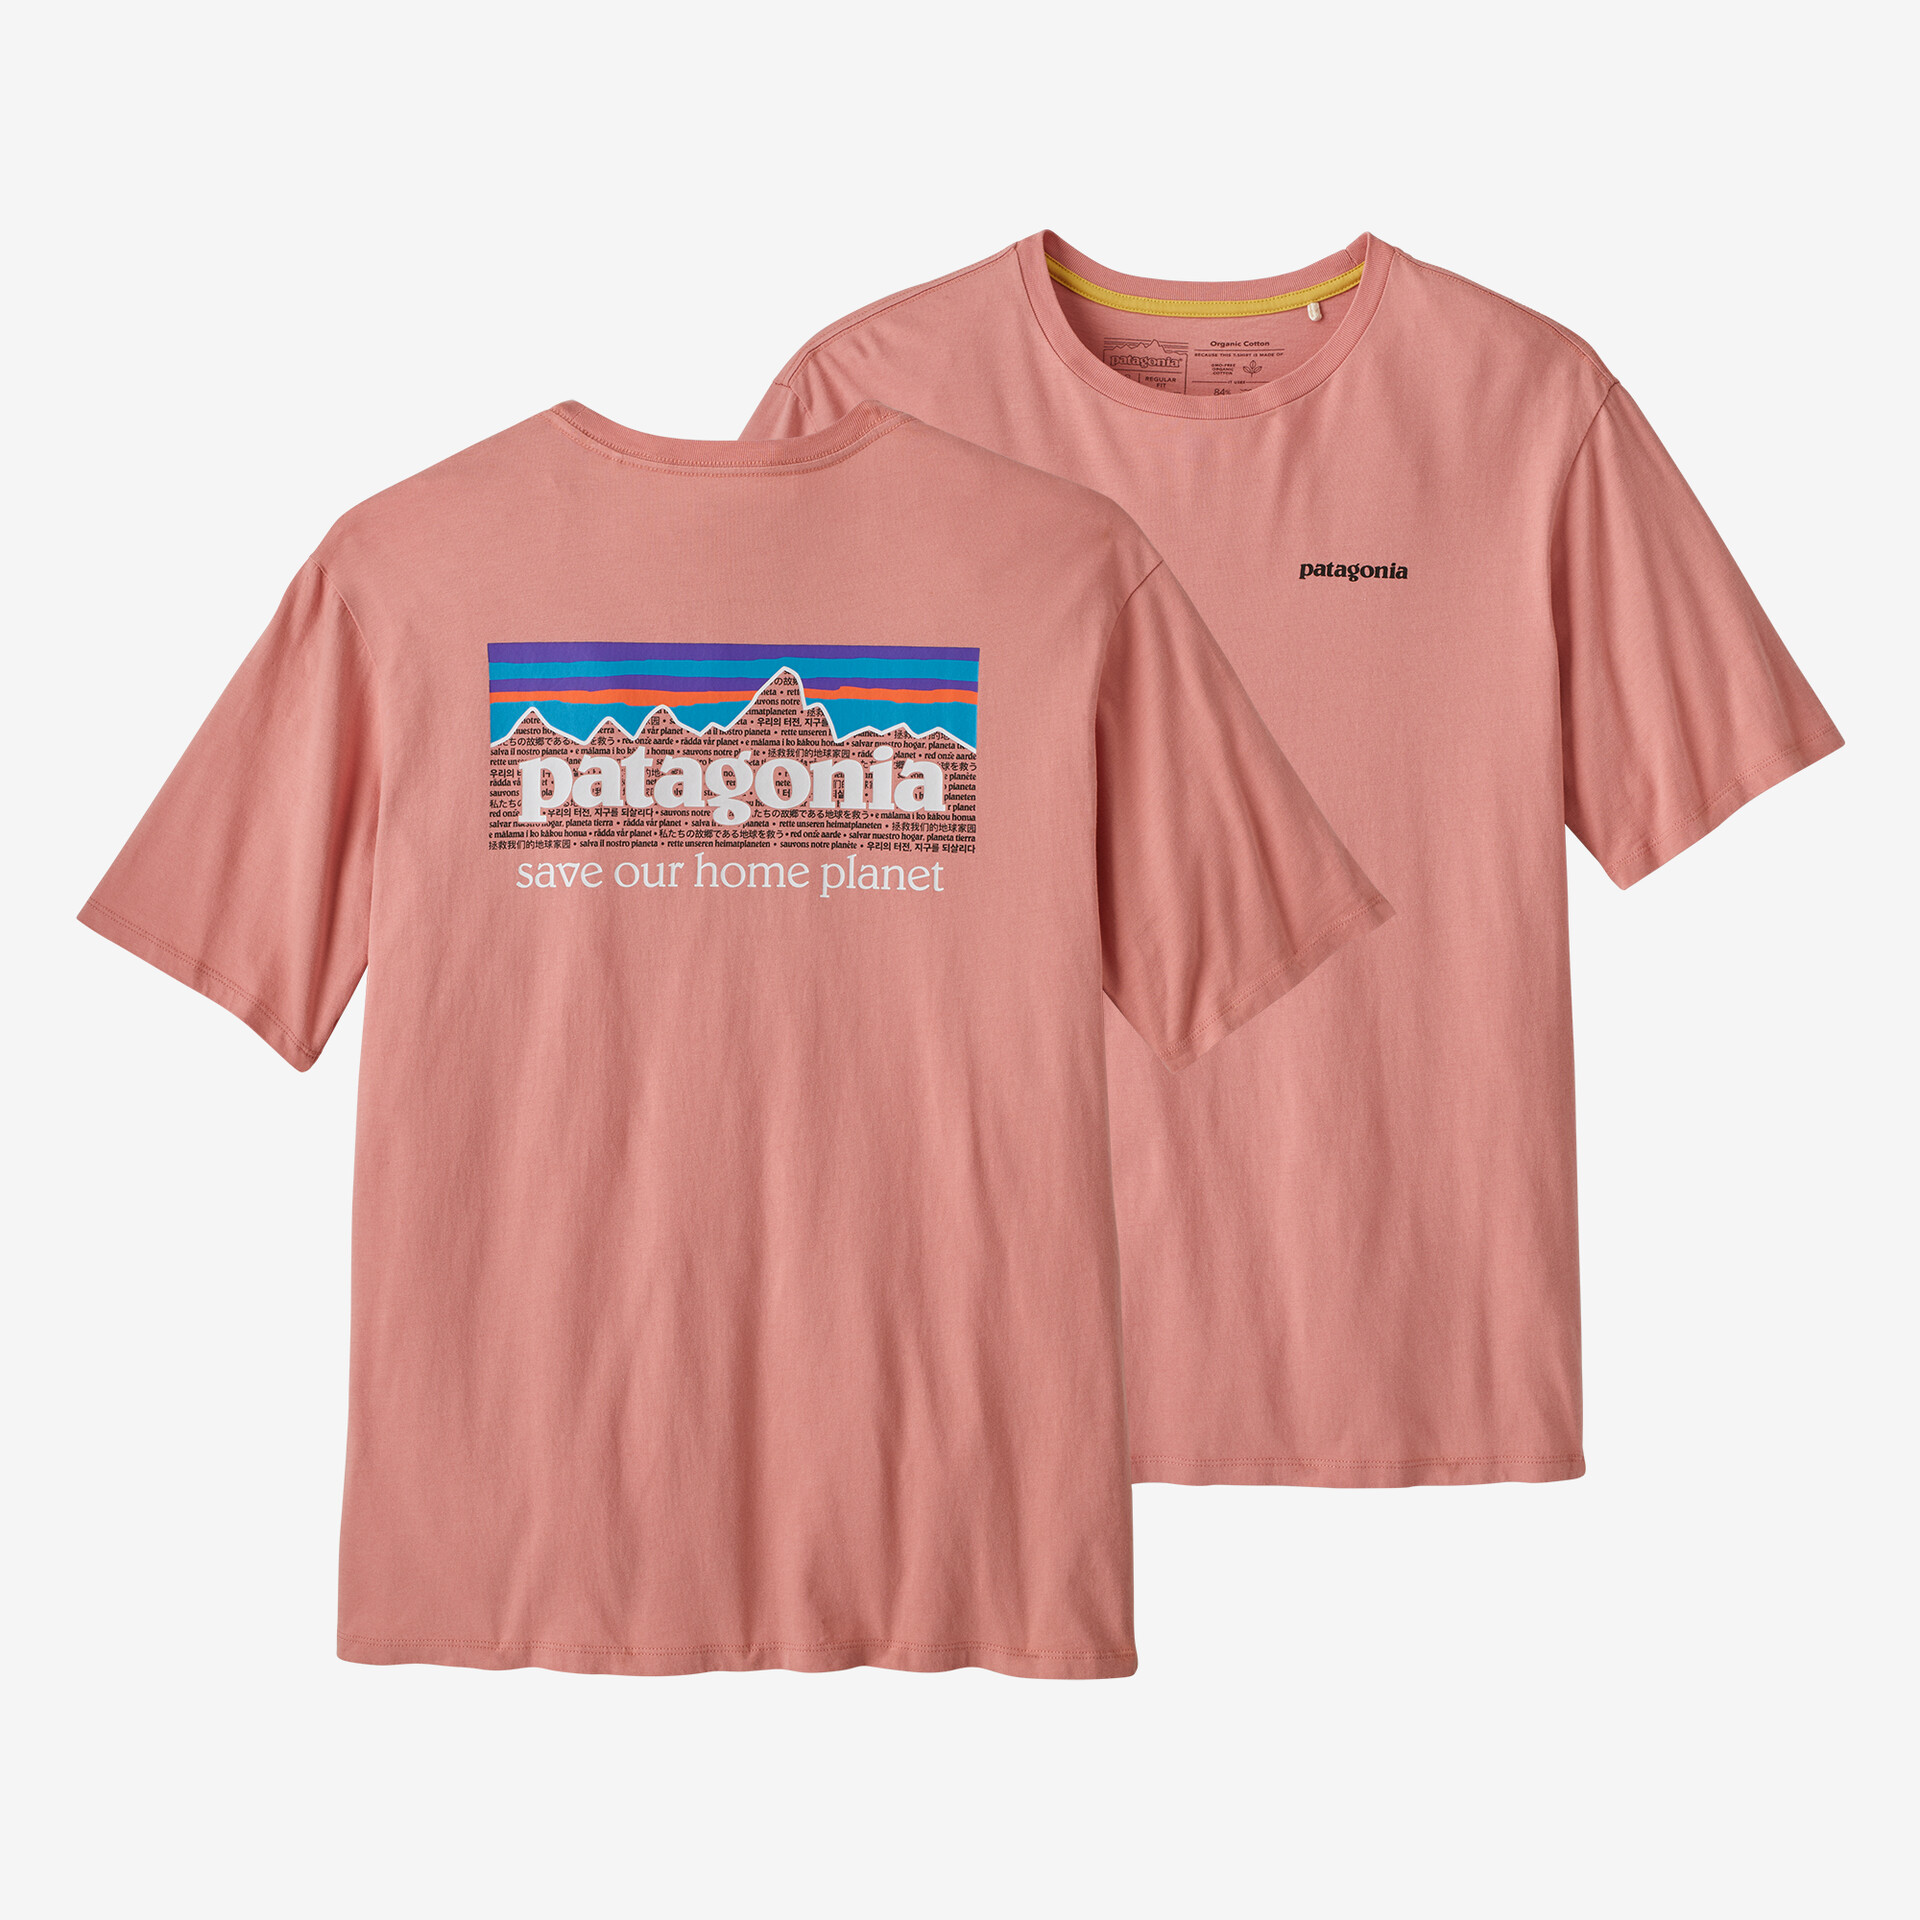 Мужская органическая футболка P-6 Mission Patagonia, цвет Sunfade Pink